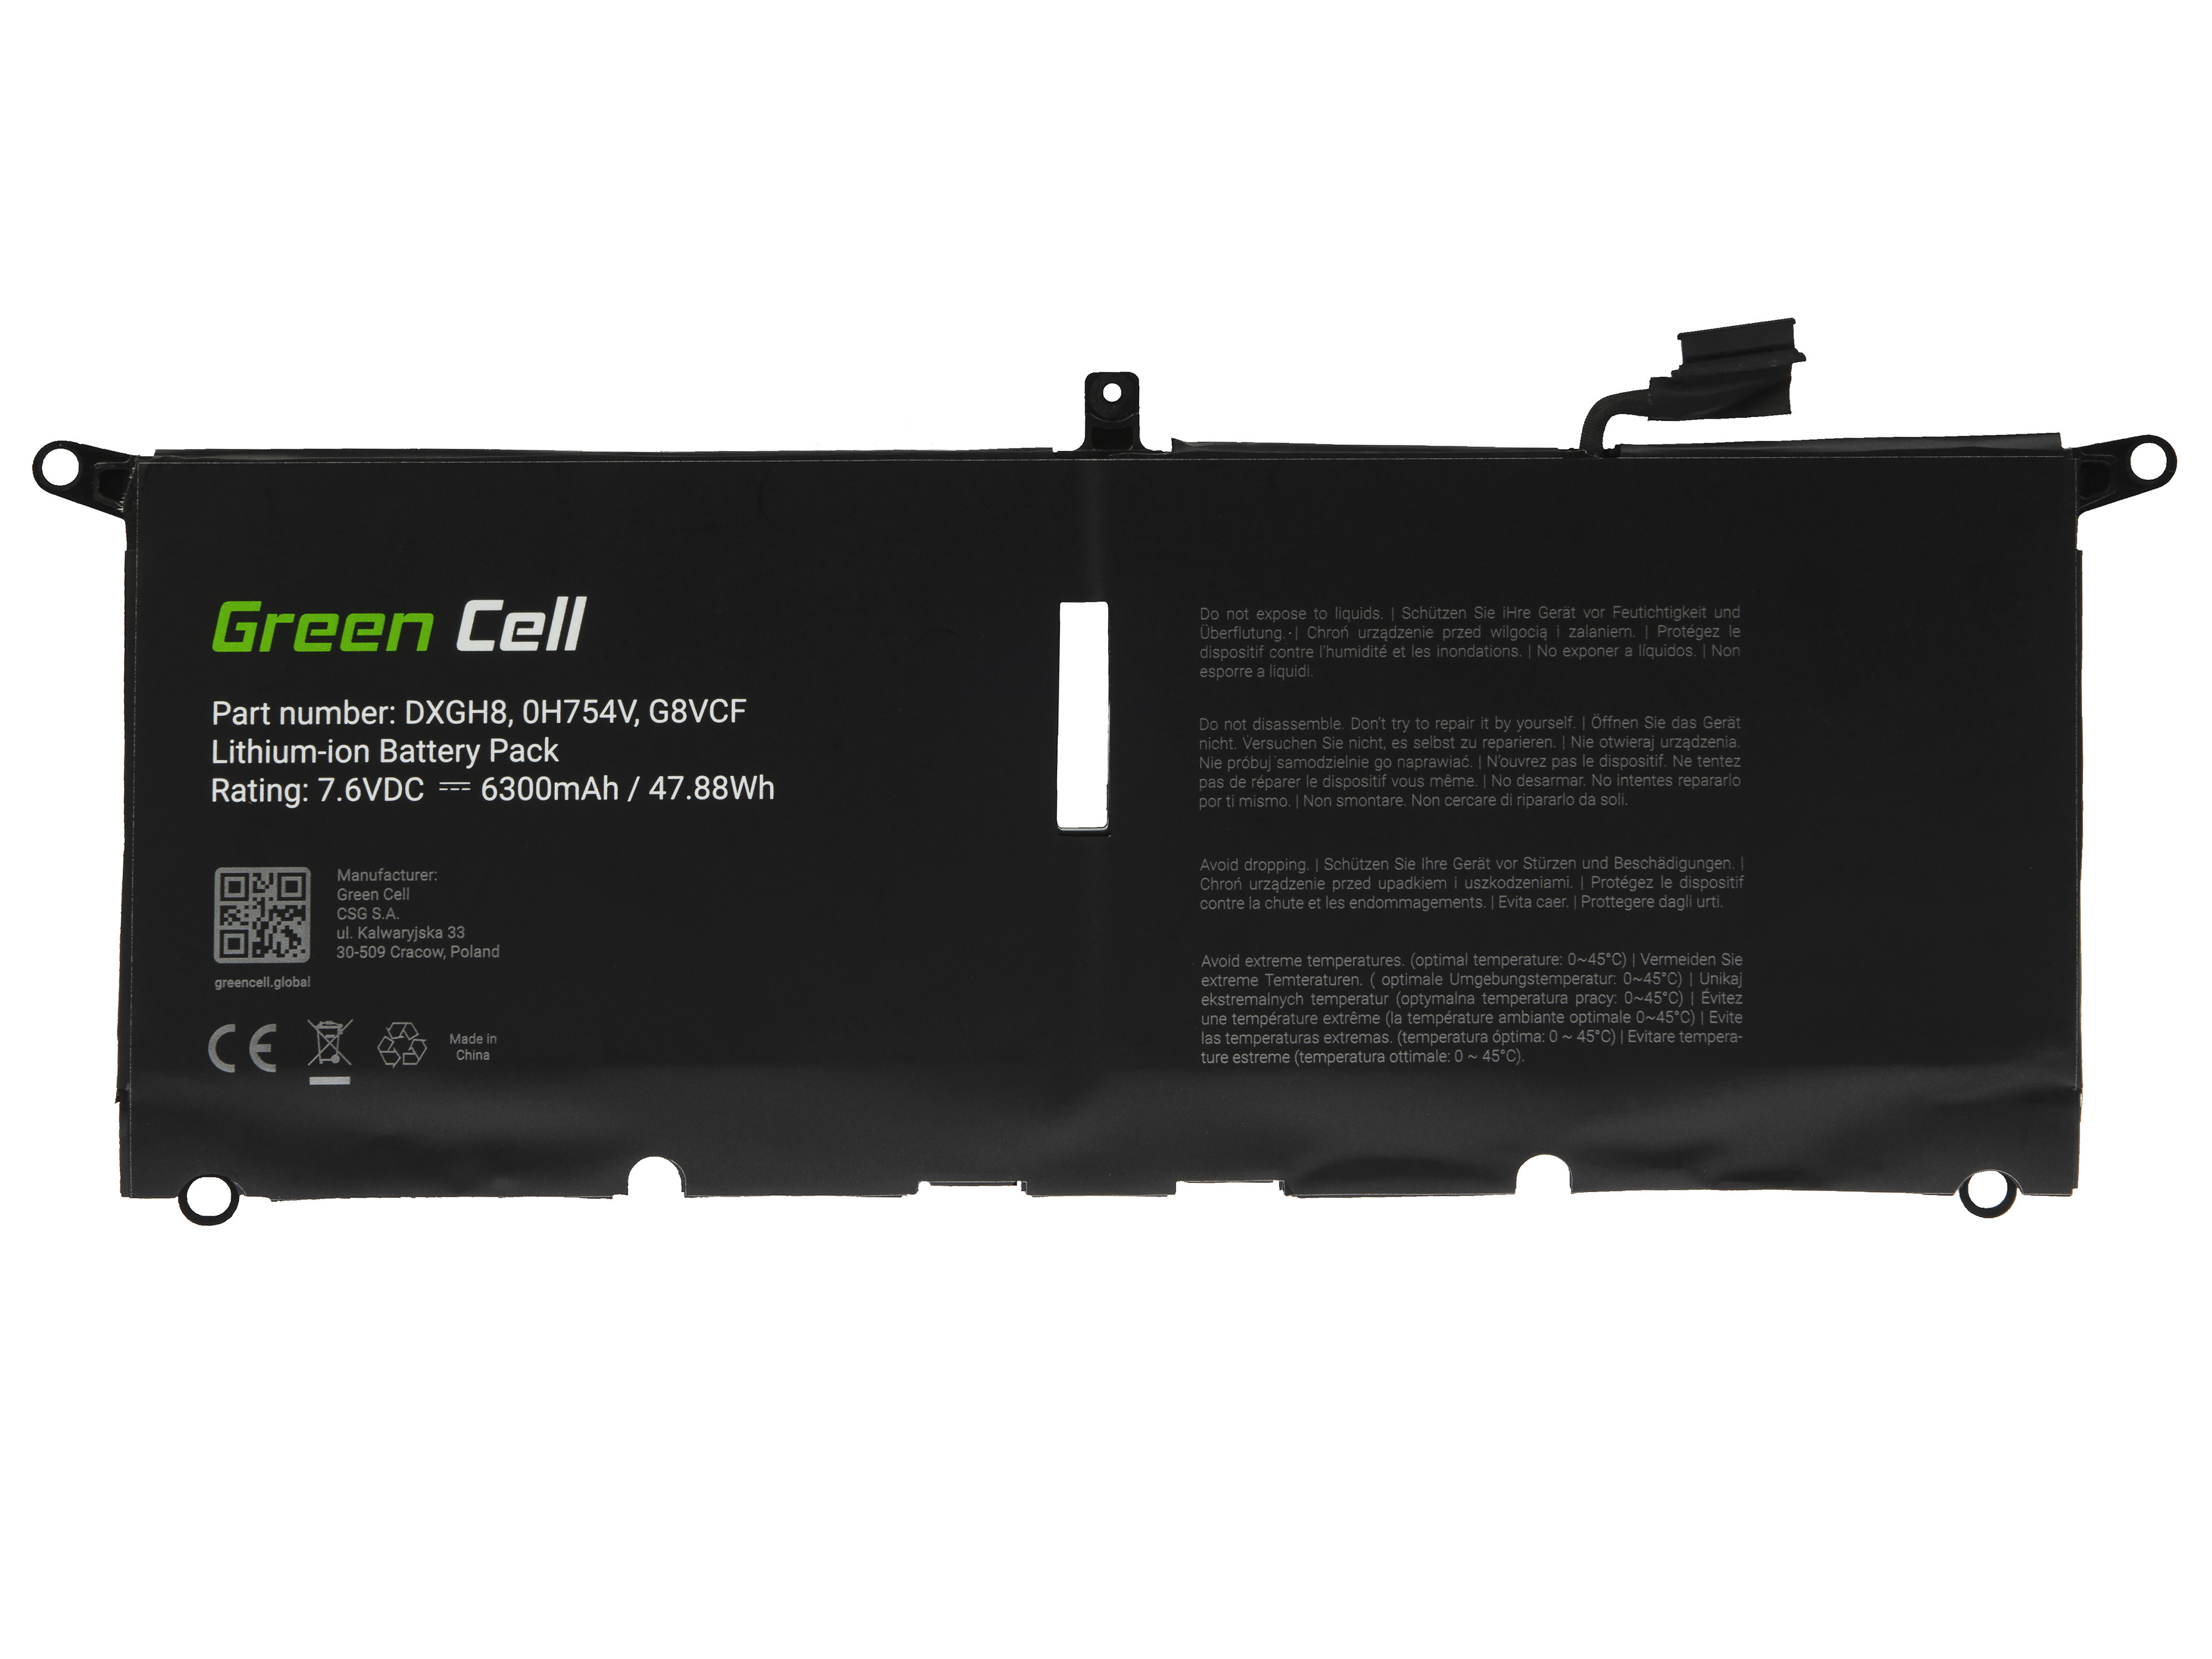 Green Cell DE143 Baterie Dell DXGH8, Dell XPS 13 9370 9380, Dell Inspiron 13 3301 5390 7390, Dell Vostro 13 5390 6300mAh Li-Pol